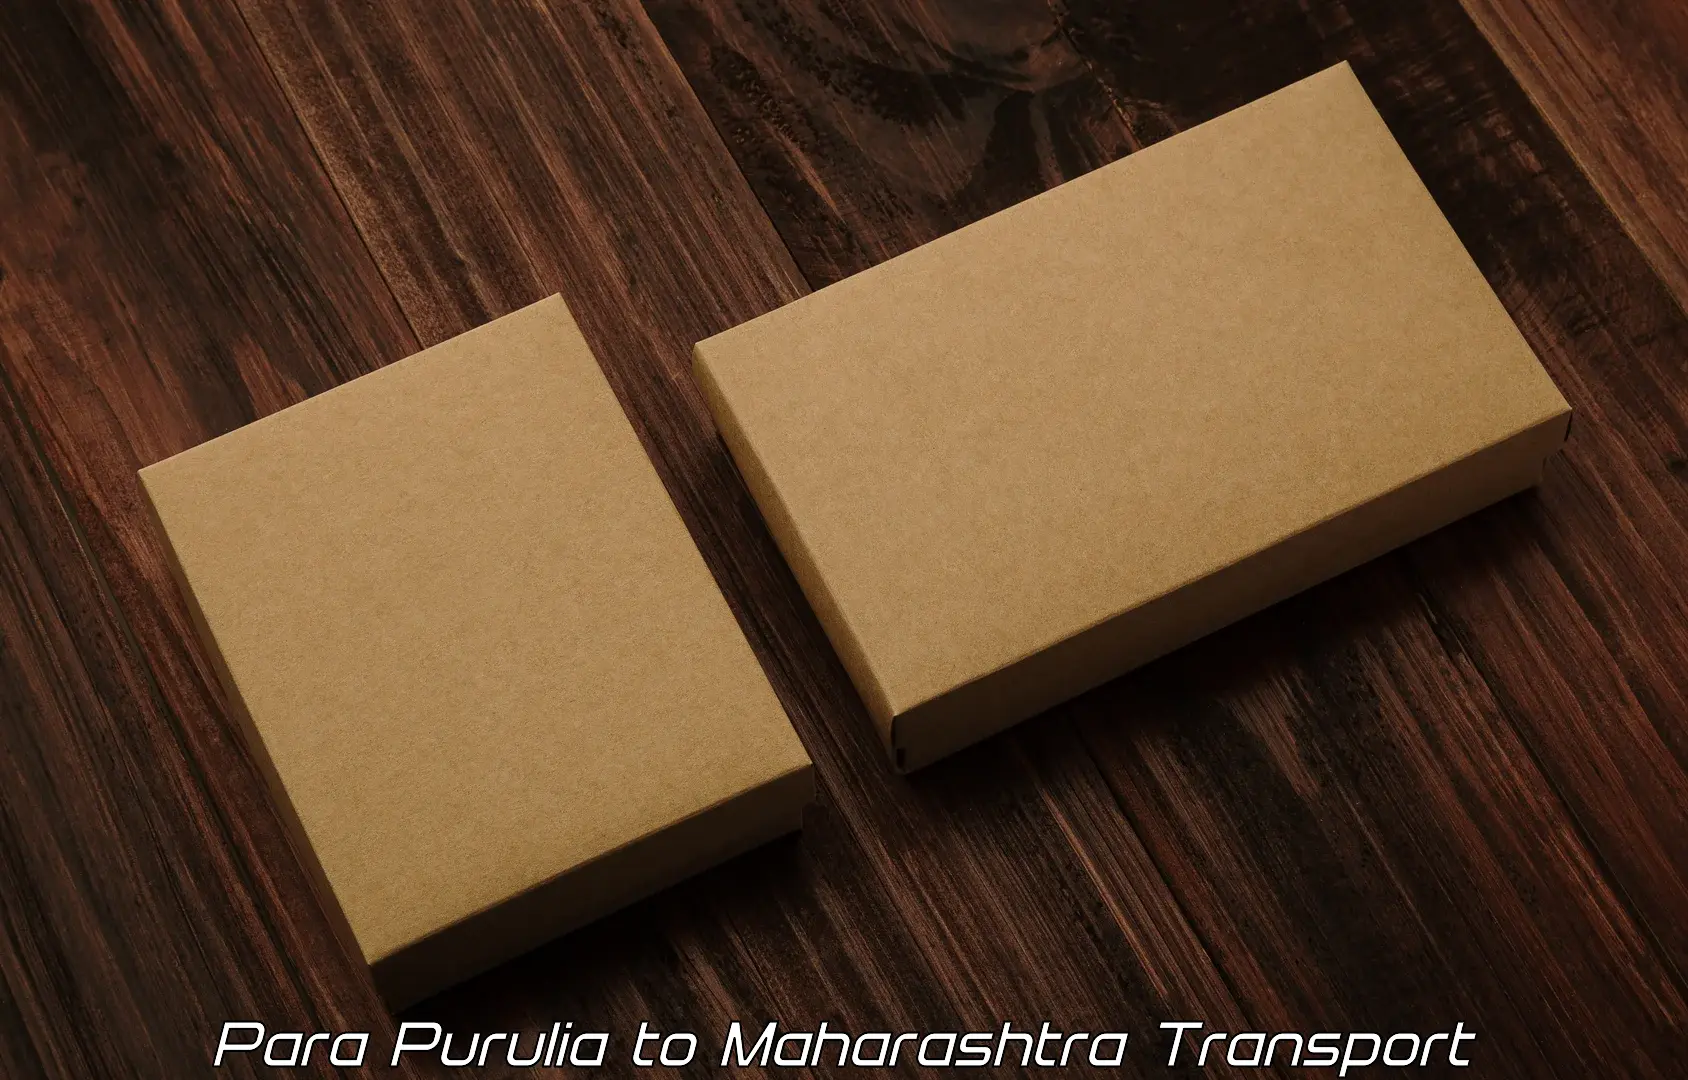 Shipping services Para Purulia to Nagothane